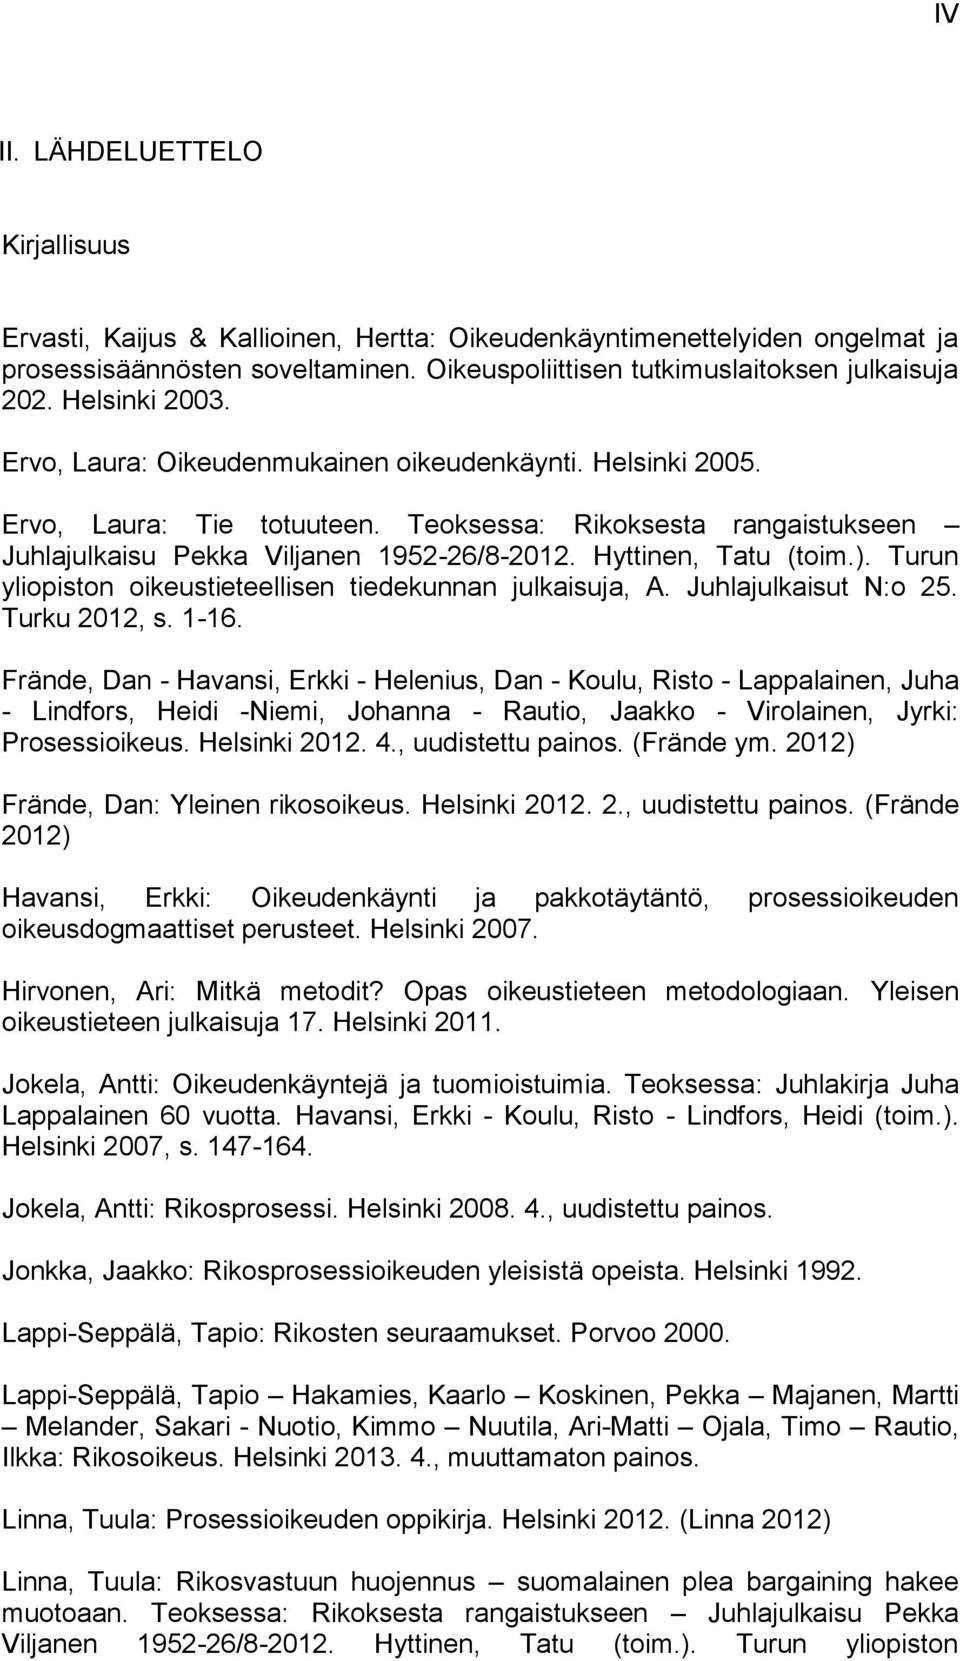 Hyttinen, Tatu (toim.). Turun yliopiston oikeustieteellisen tiedekunnan julkaisuja, A. Juhlajulkaisut N:o 25. Turku 2012, s. 1-16.